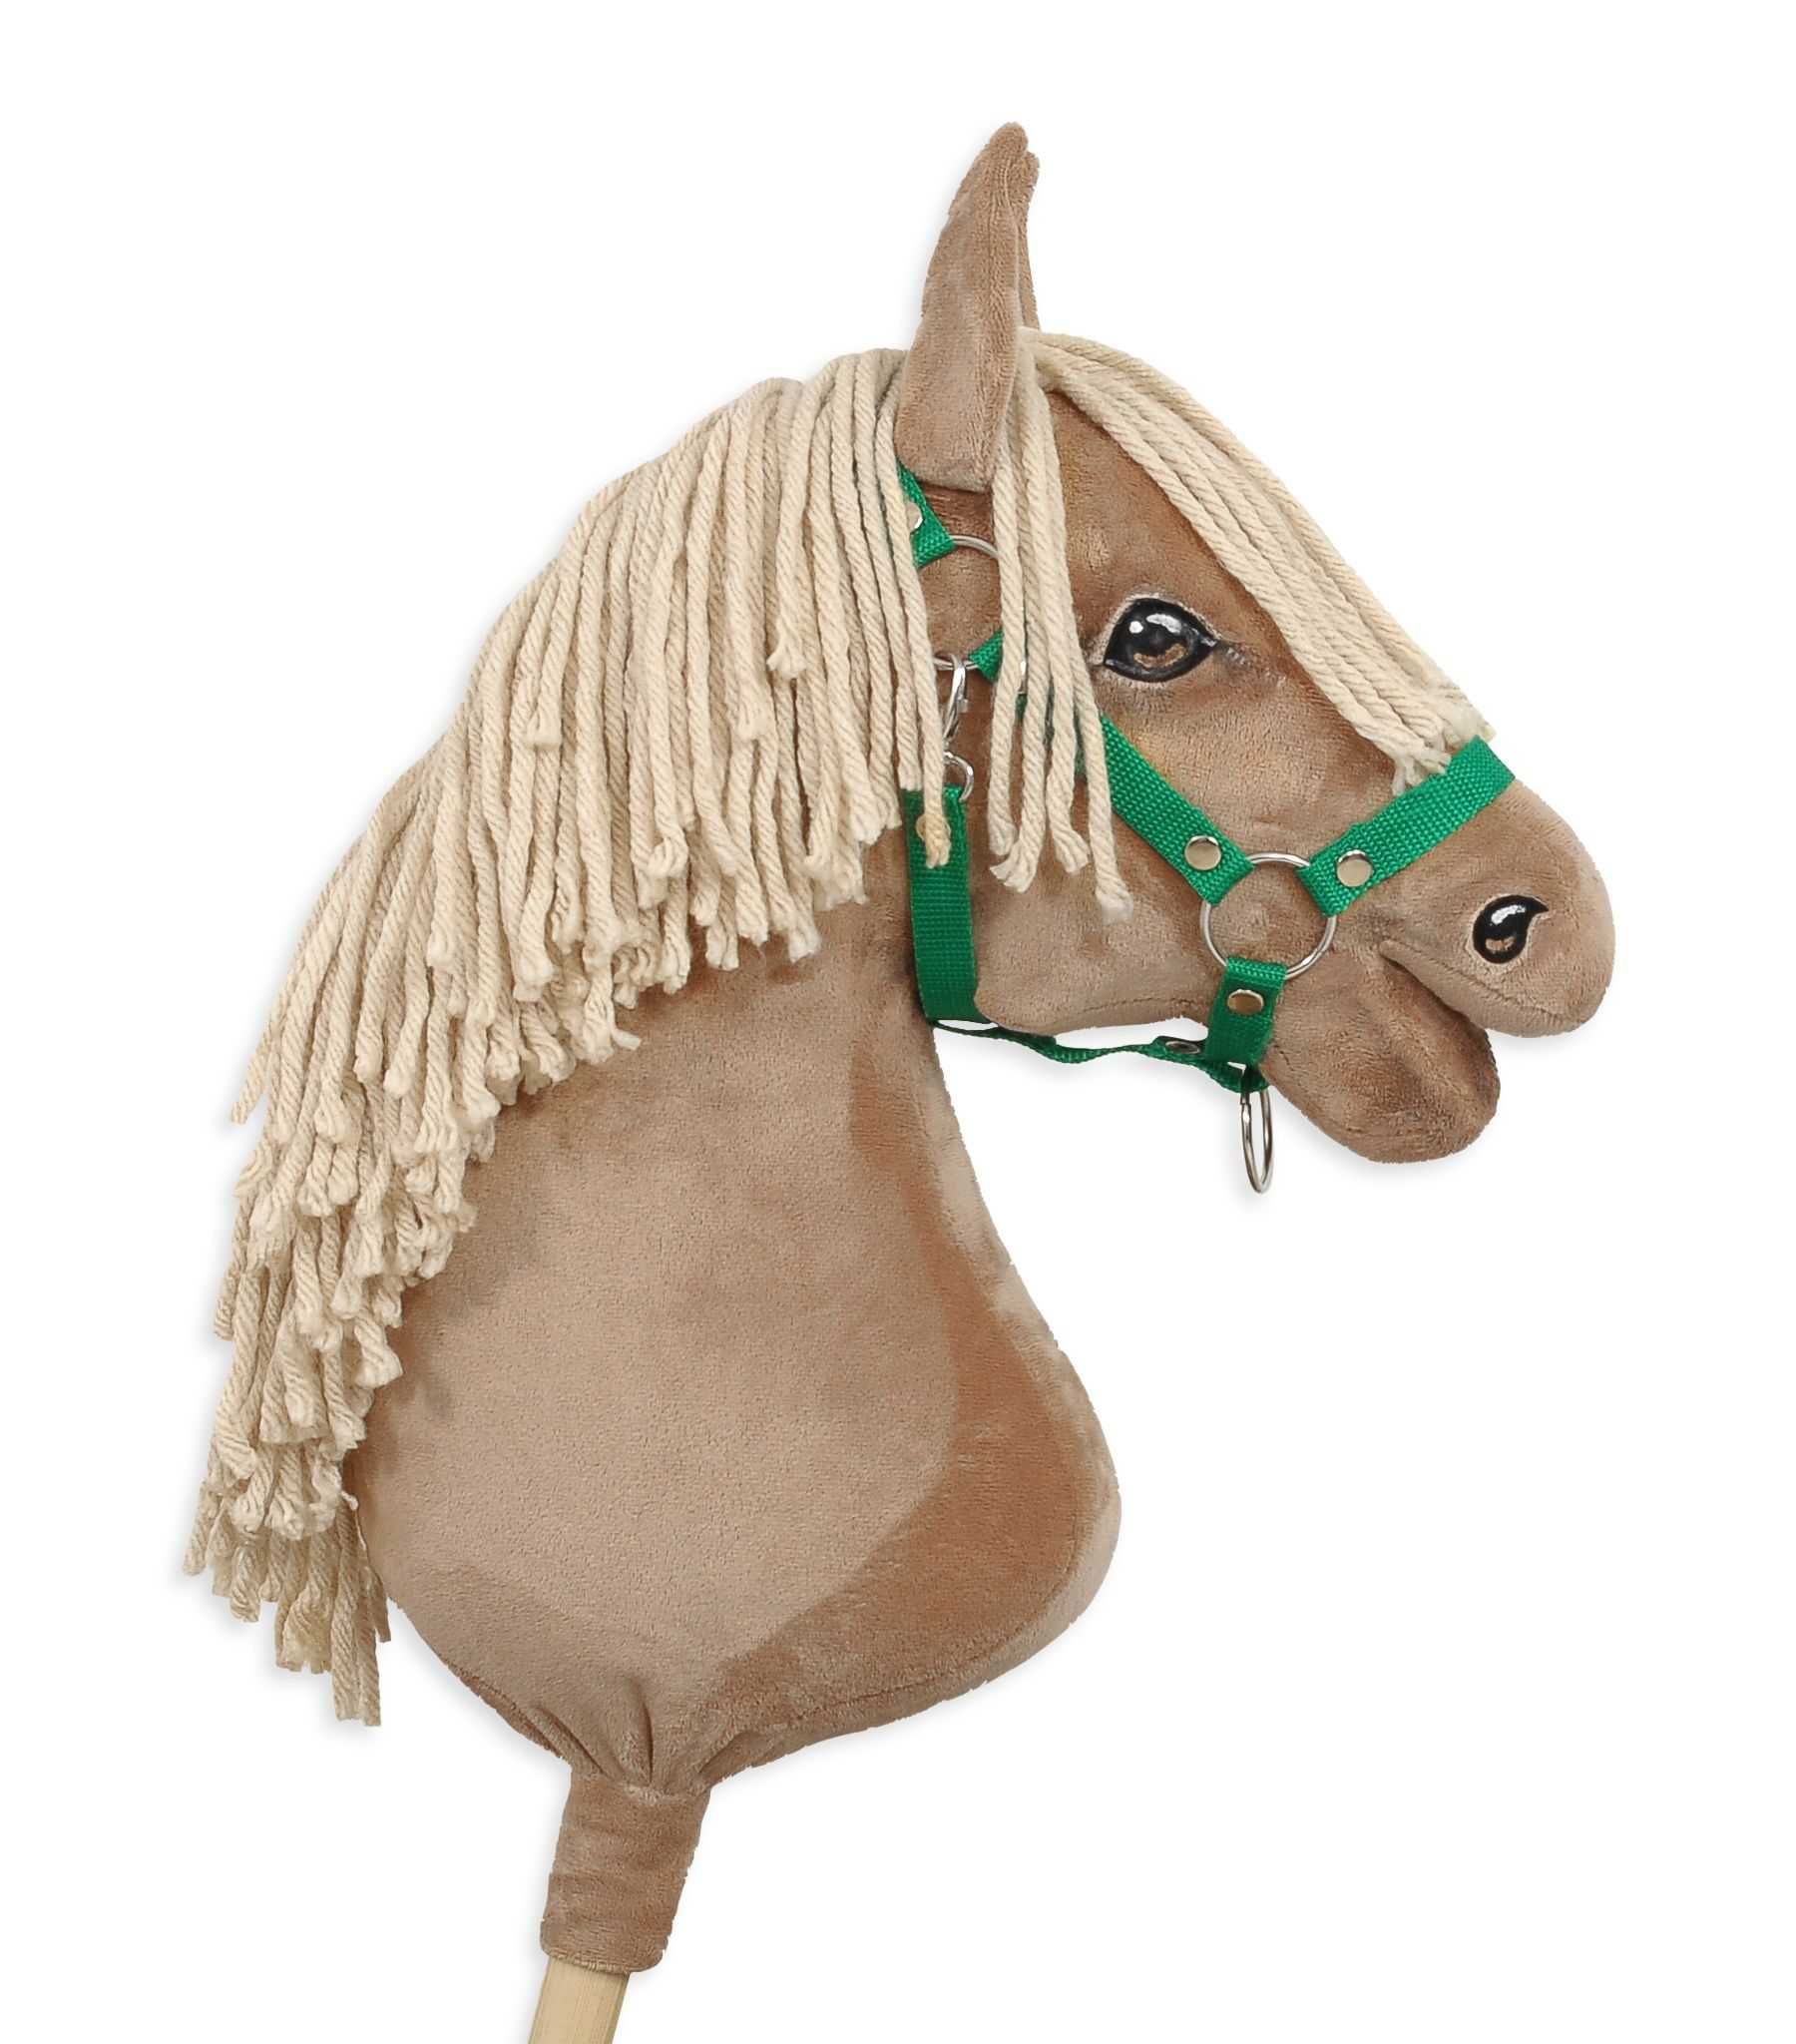 Kantar regulowany dla konia Hobby Horse A3 - zielony!